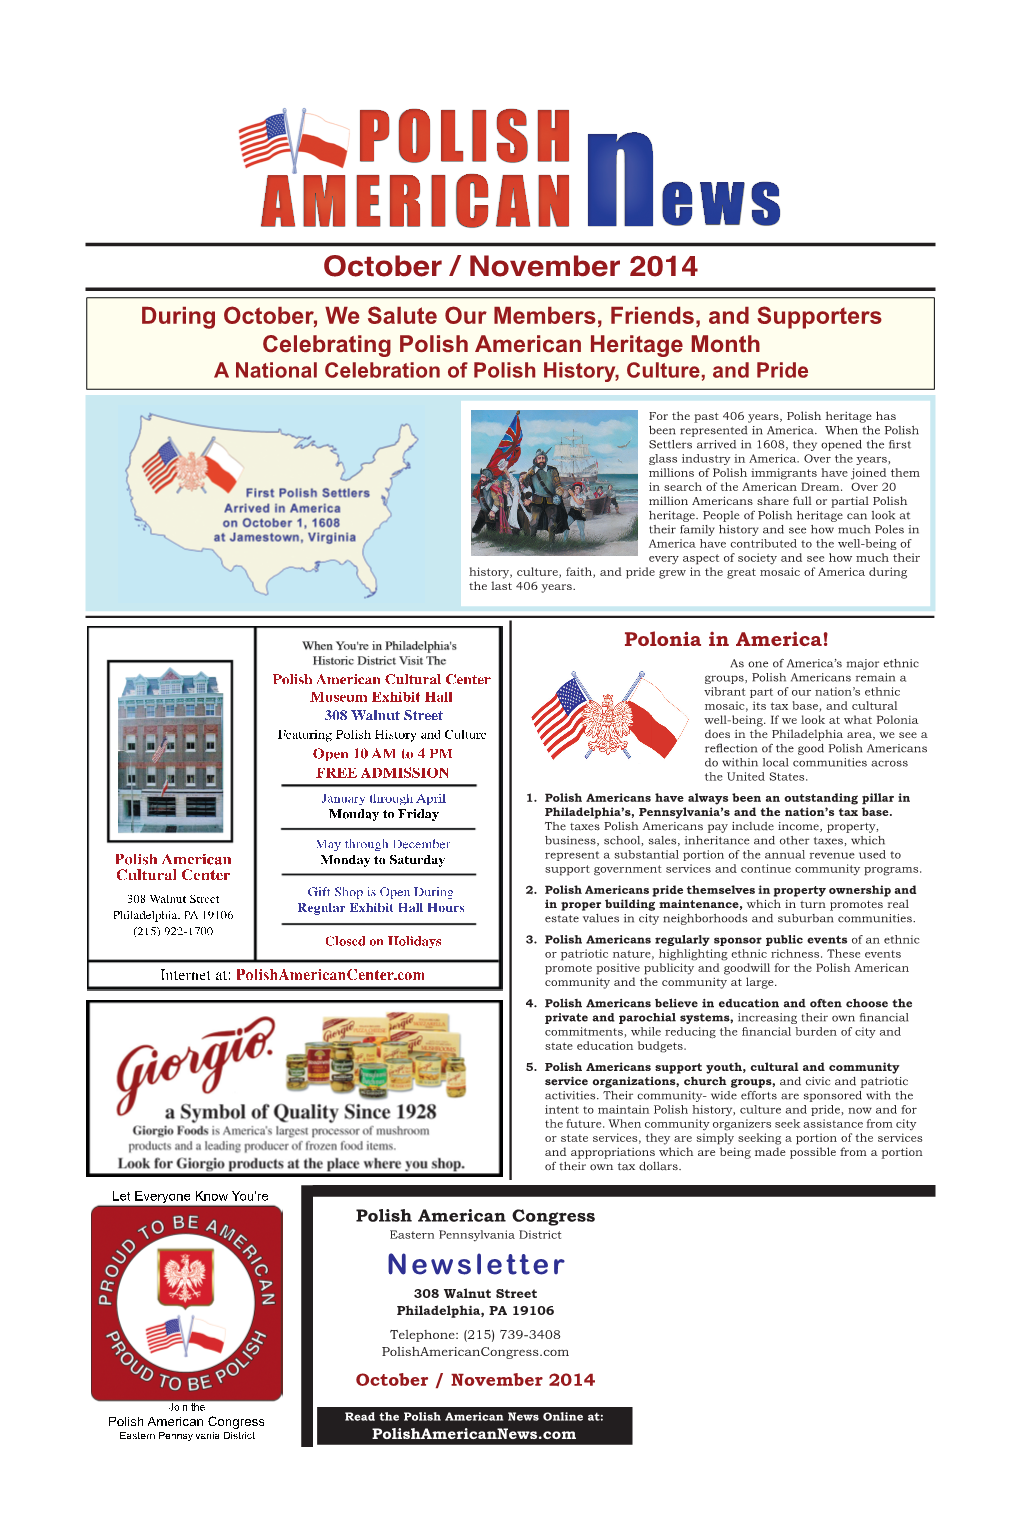 October / November 2014 Newsletter